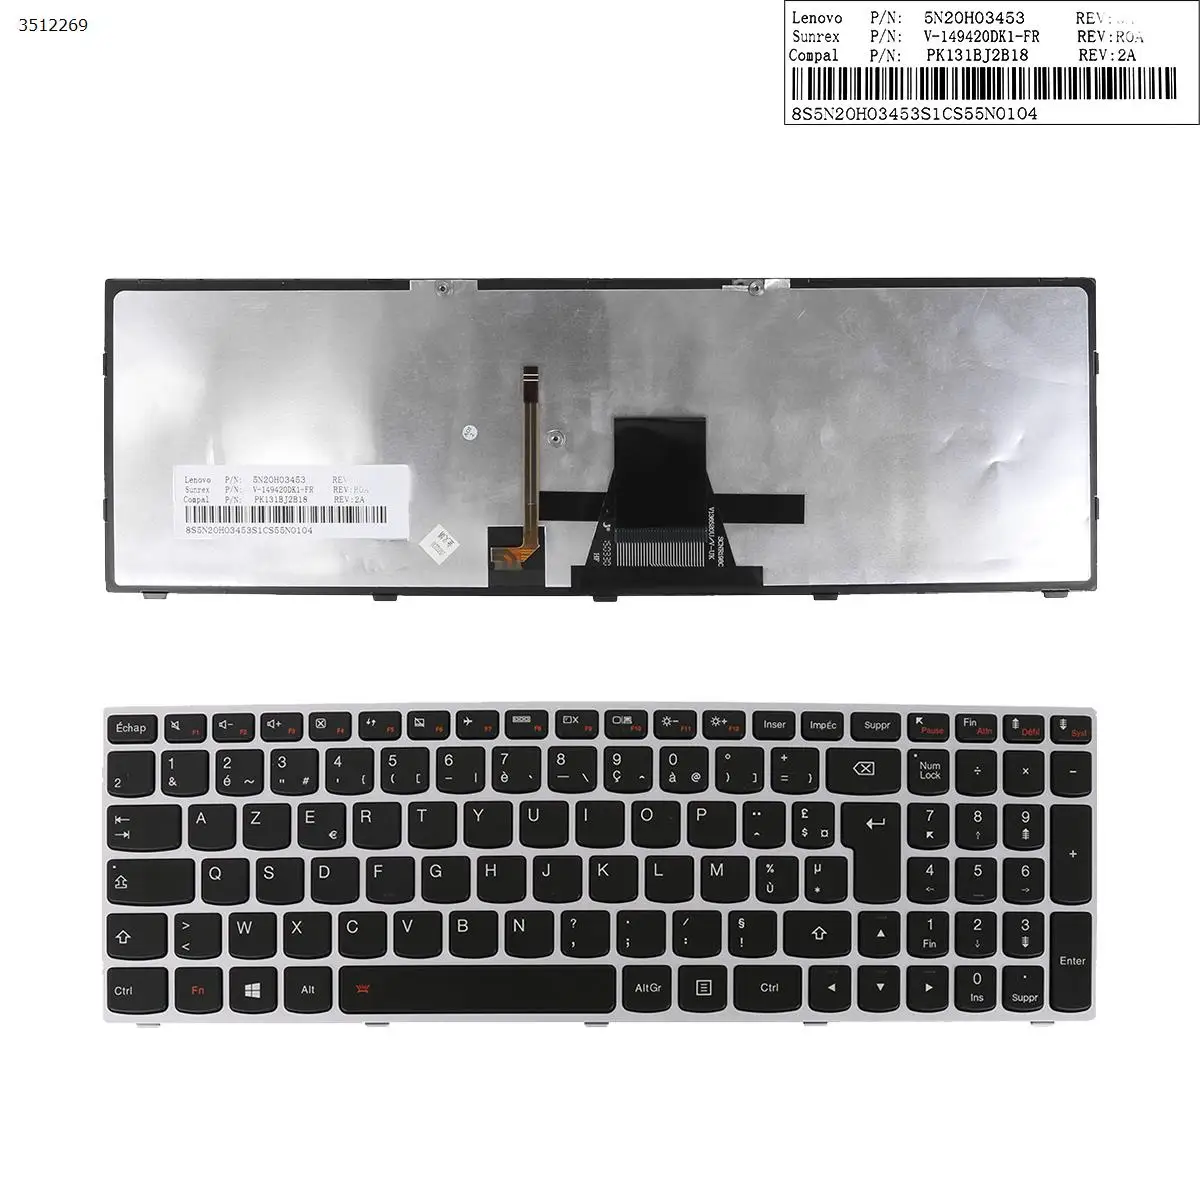 

FR French AZERTY New Keyboard for Lenovo G51-35 G70-35 G70-70 G70-80 Z50-70 Z50-75 Z51-70 Z70-80 Laptop Silver Frame Backlit